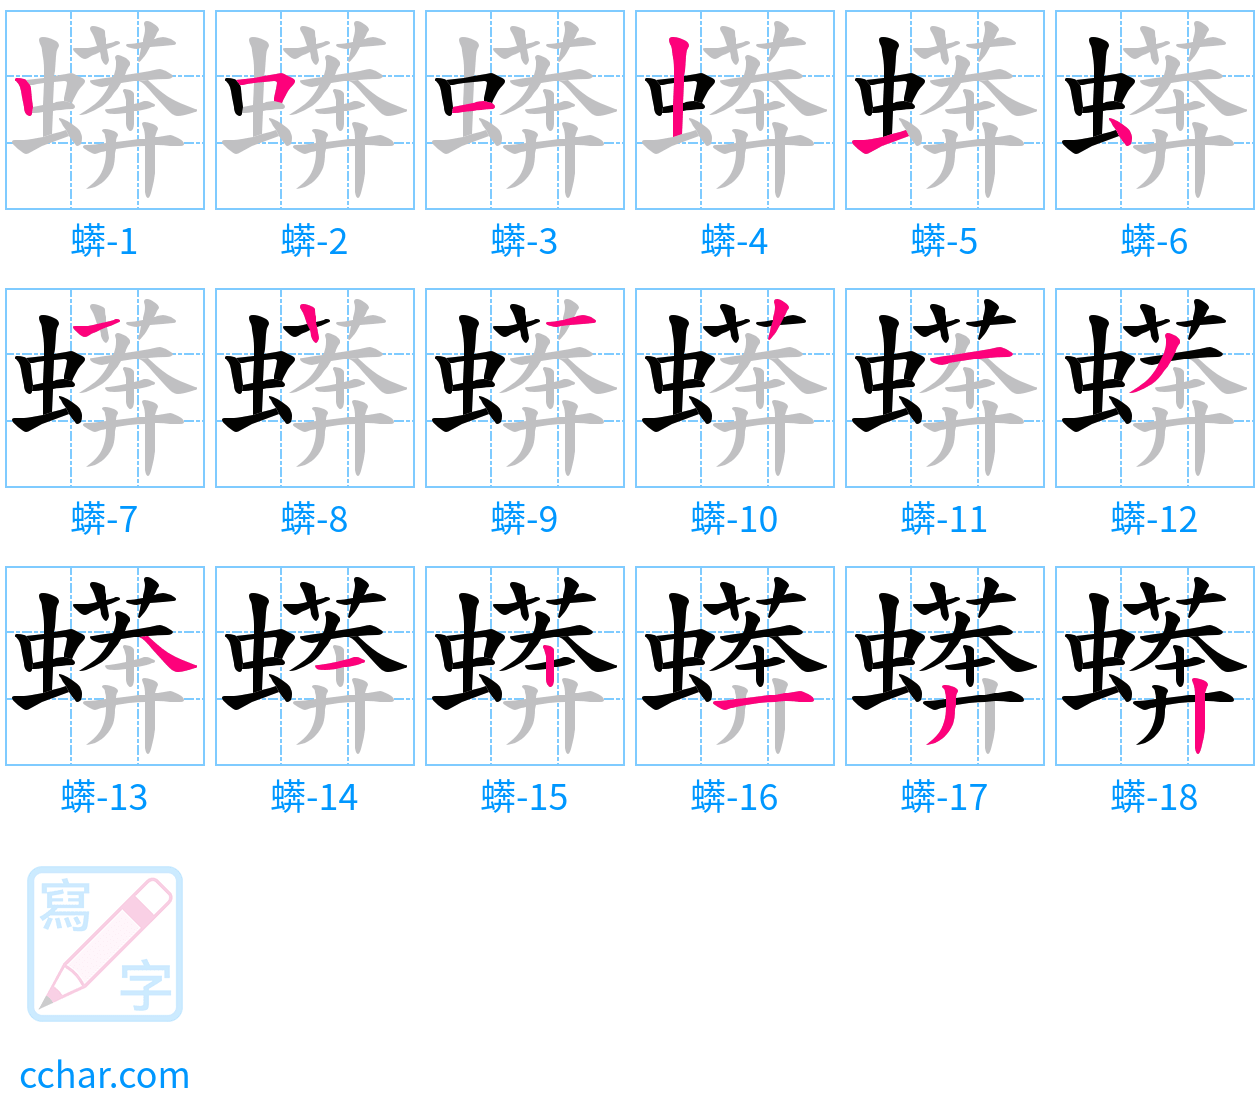 蠎 stroke order step-by-step diagram